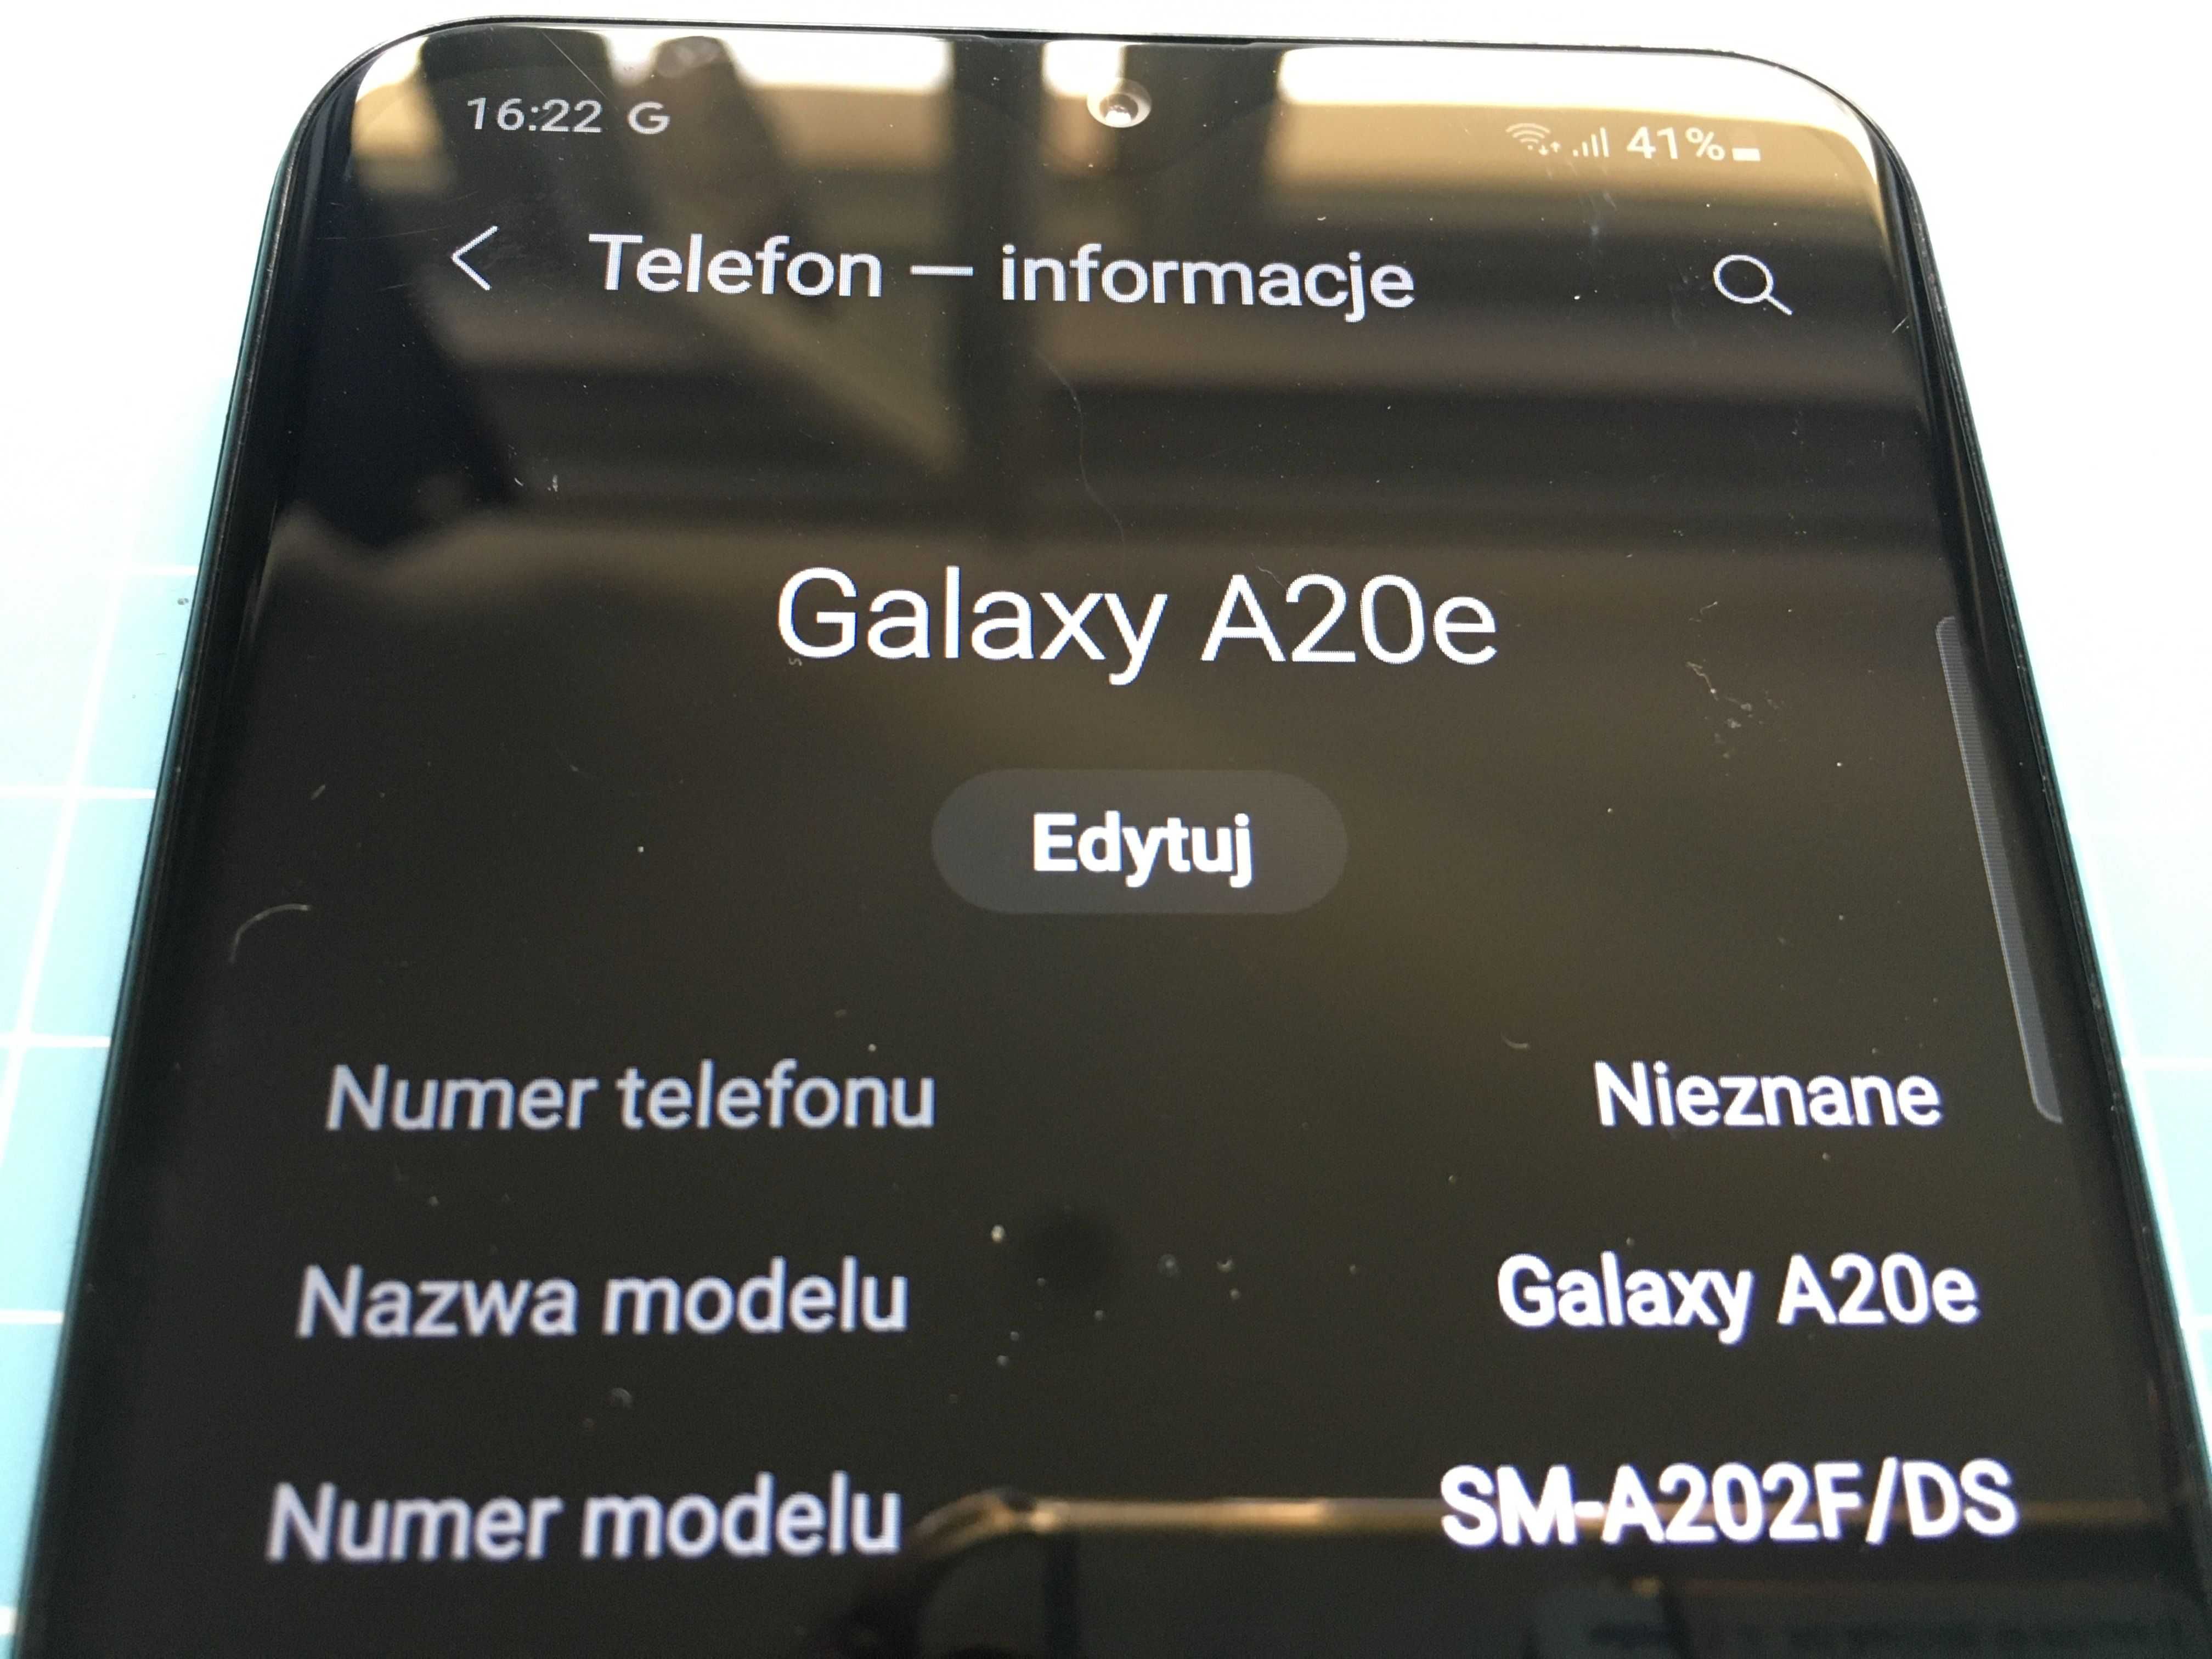 SAMSUNG Galaxy A20e 3GB/32GB sporadycznie używany